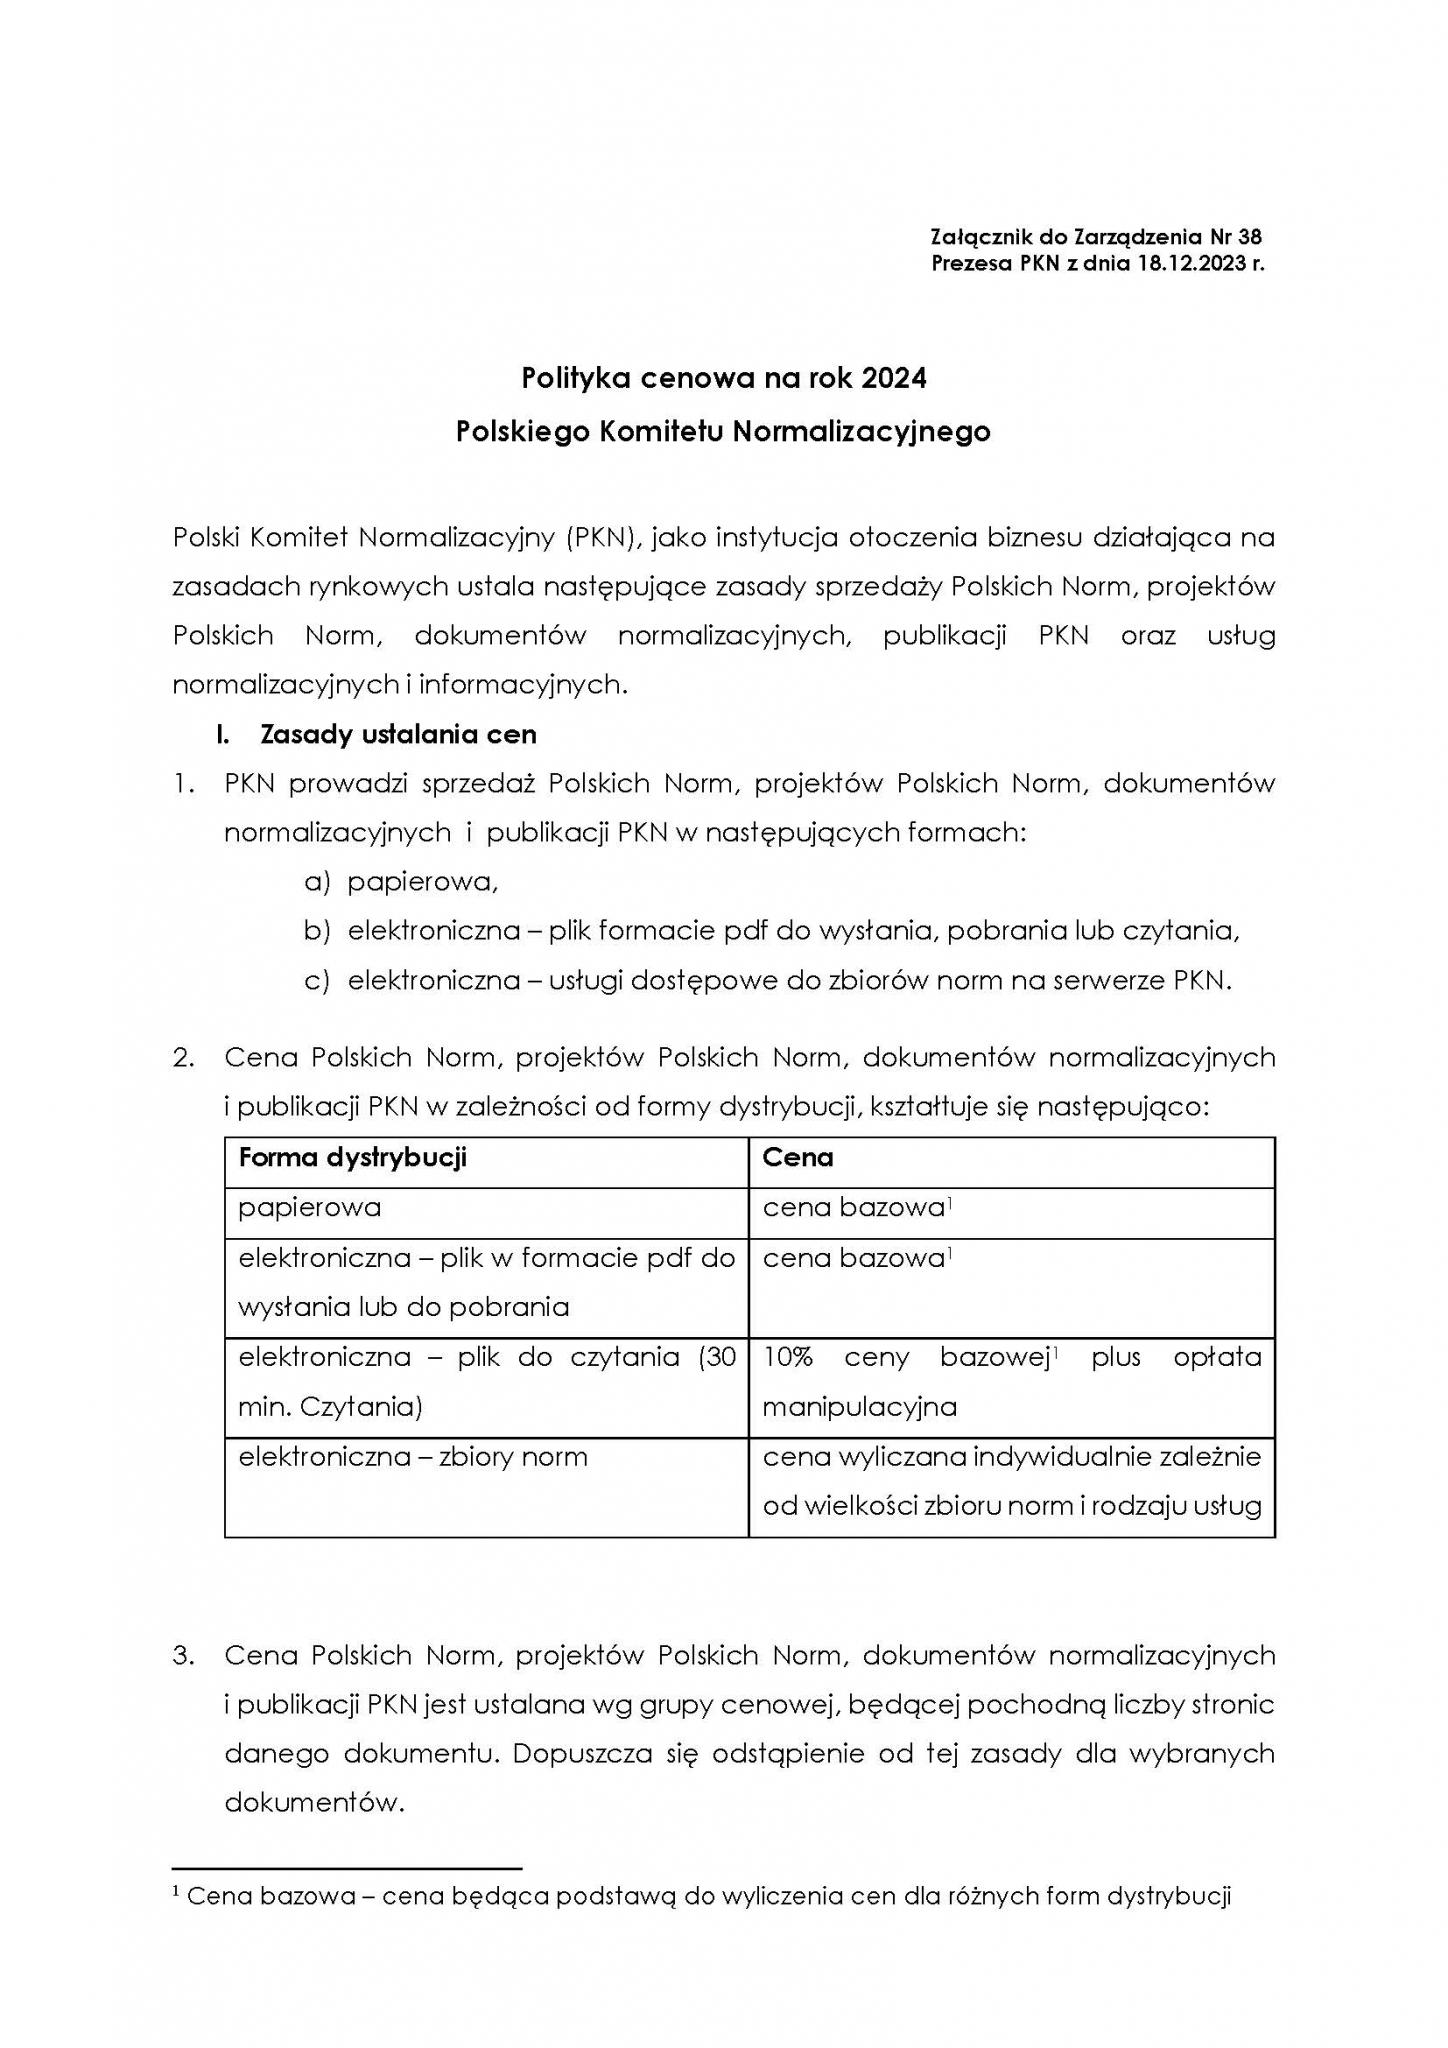 Print screen pierwszej strony dokumentu Polityka cenowa PKN 2024, otwierający całość tego dokumentu w formie PDF